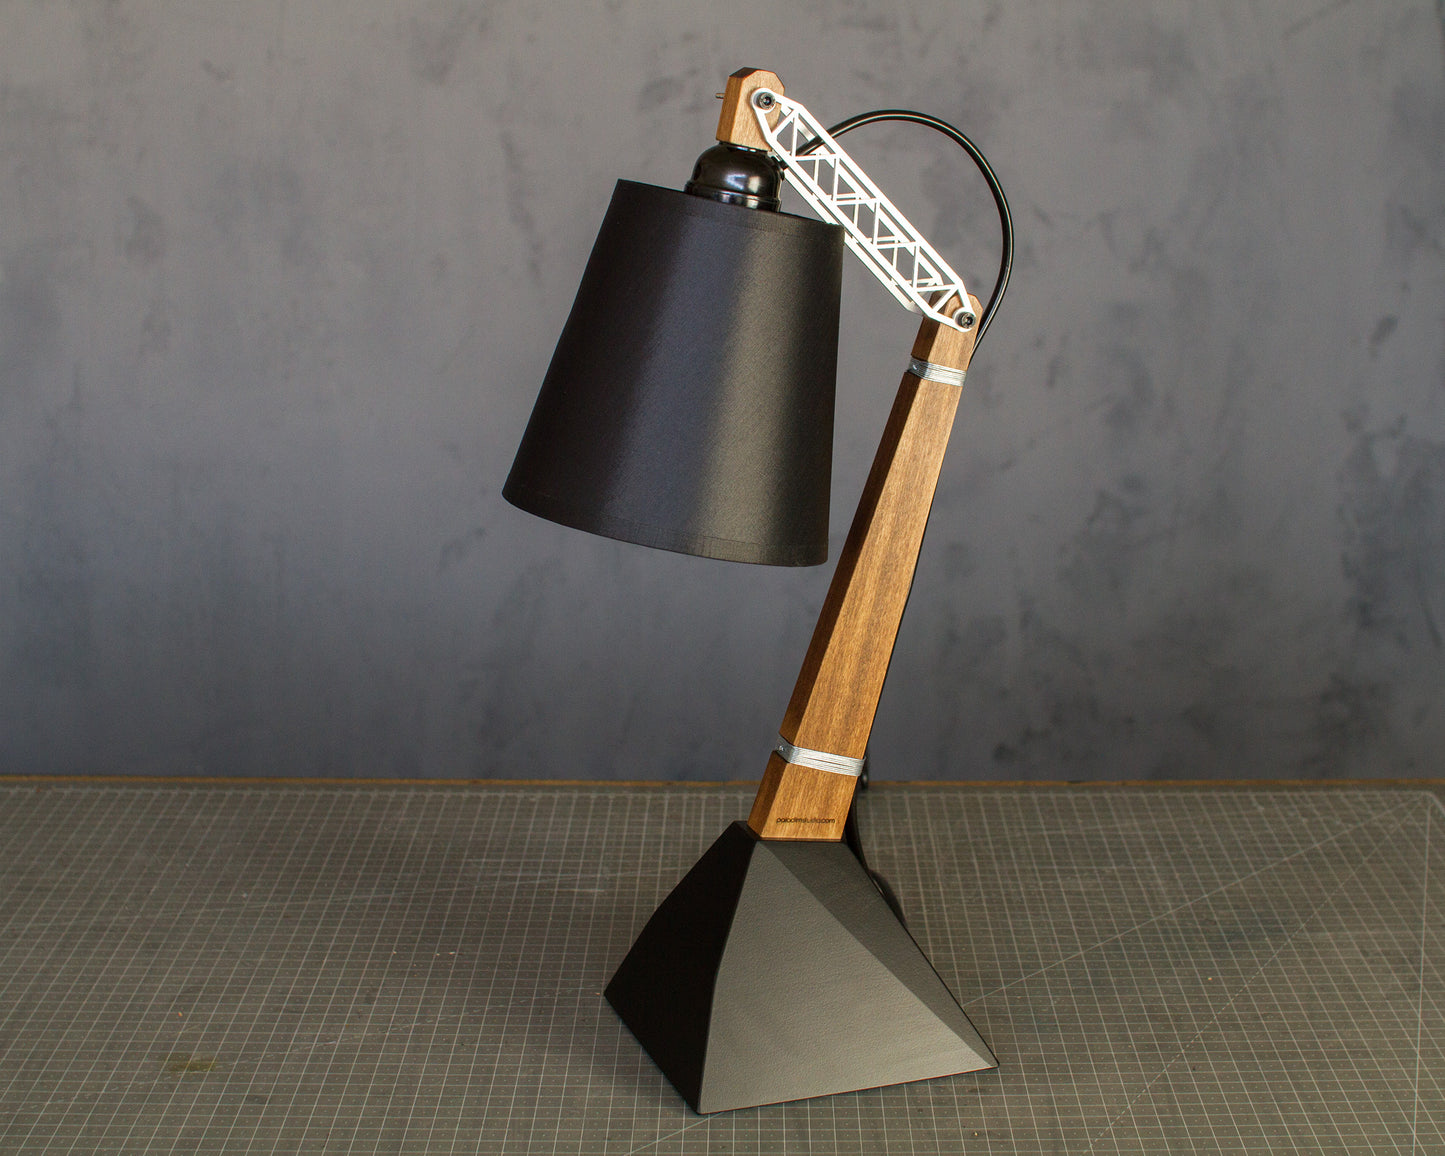 KRIVA adjustable desk lamp